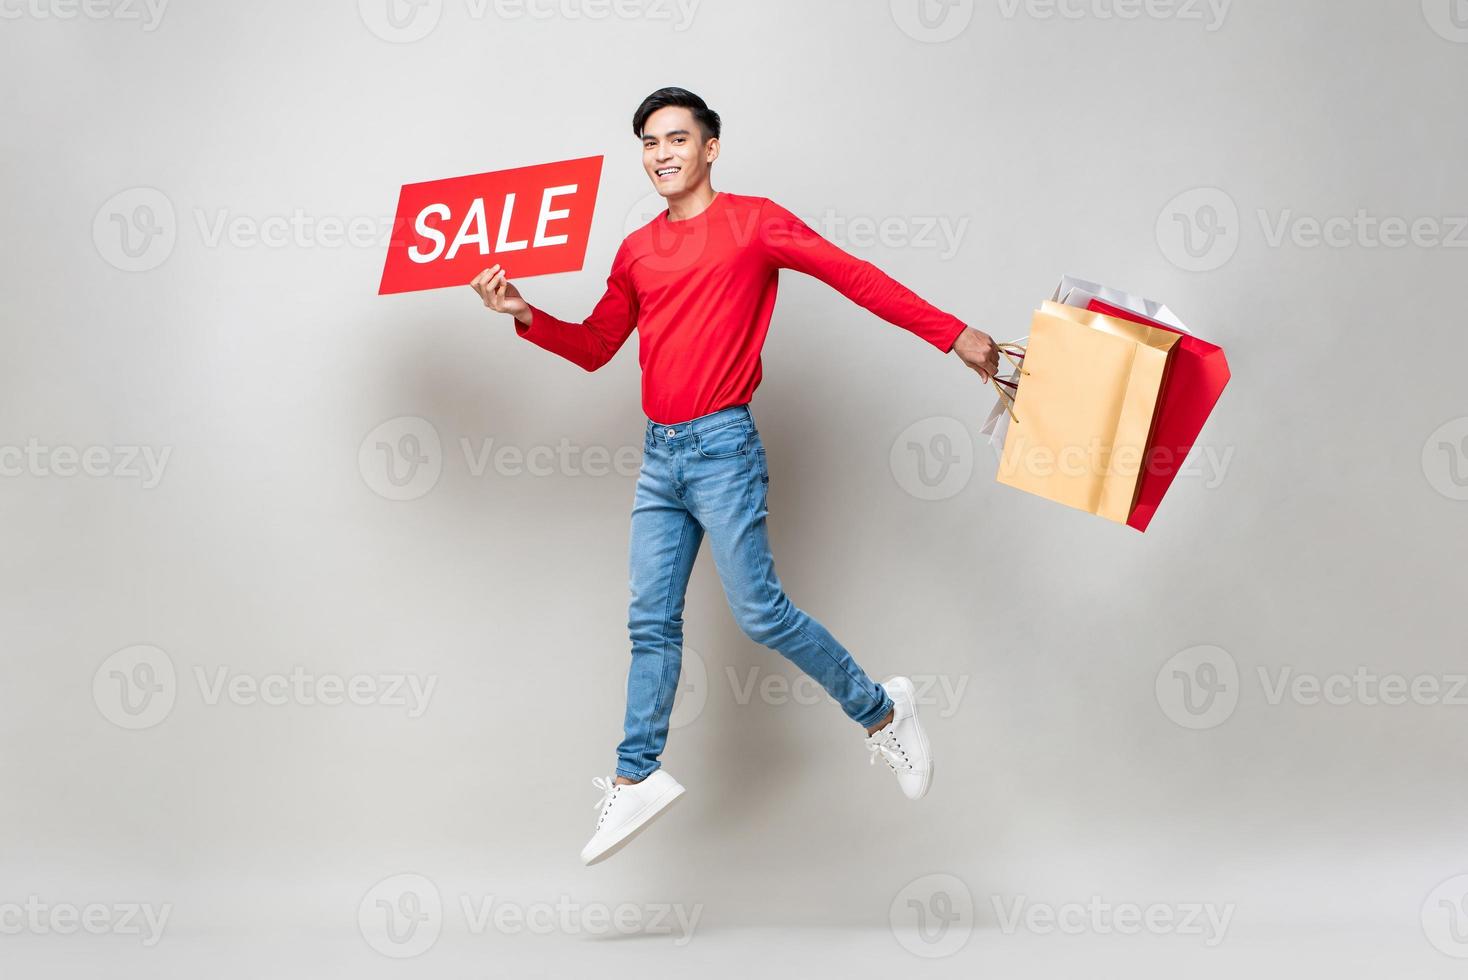 homme asiatique surpris tenant des sacs à provisions et signe de vente rouge sautant dans un fond de studio gris clair isolé pour le concept de vente du nouvel an chinois photo